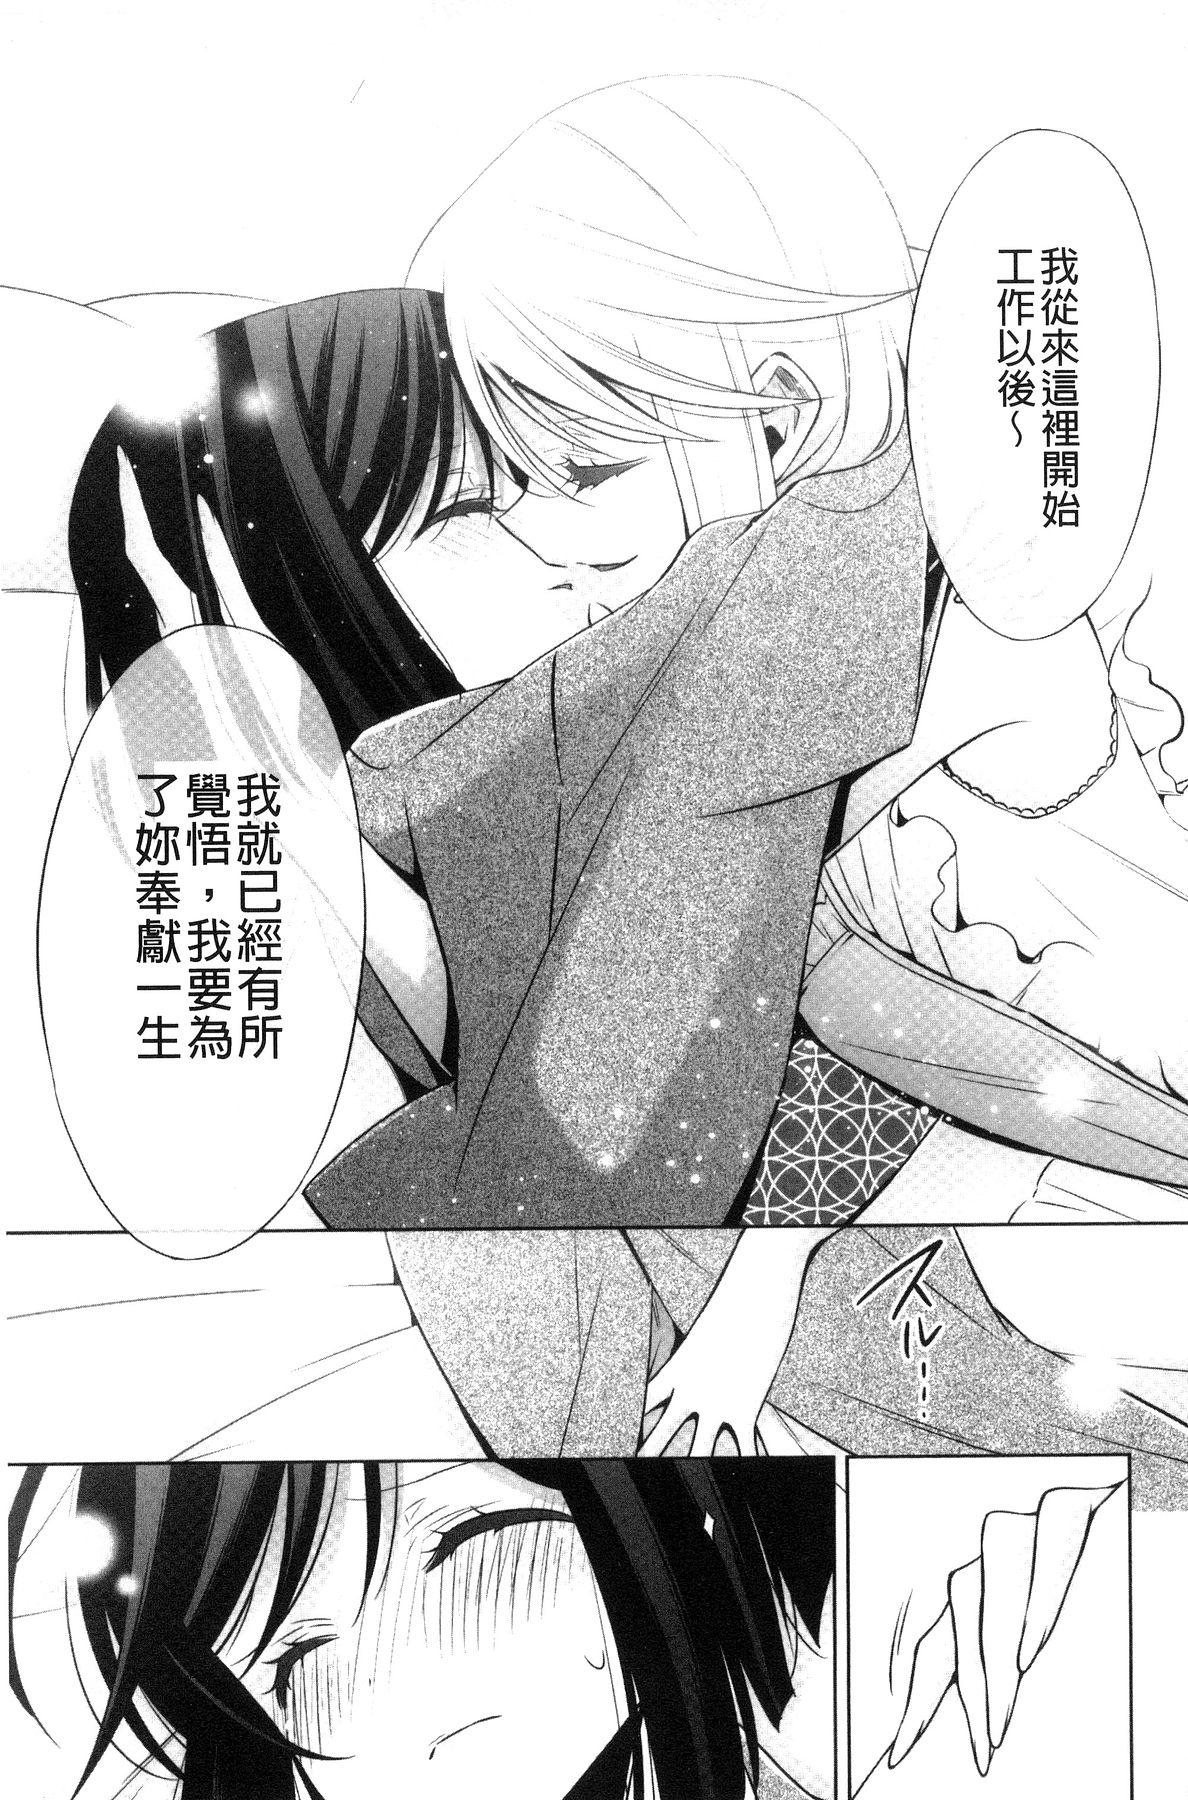 Kanojo to Watashi no Himitsu no Koi - She falls in love with her 193